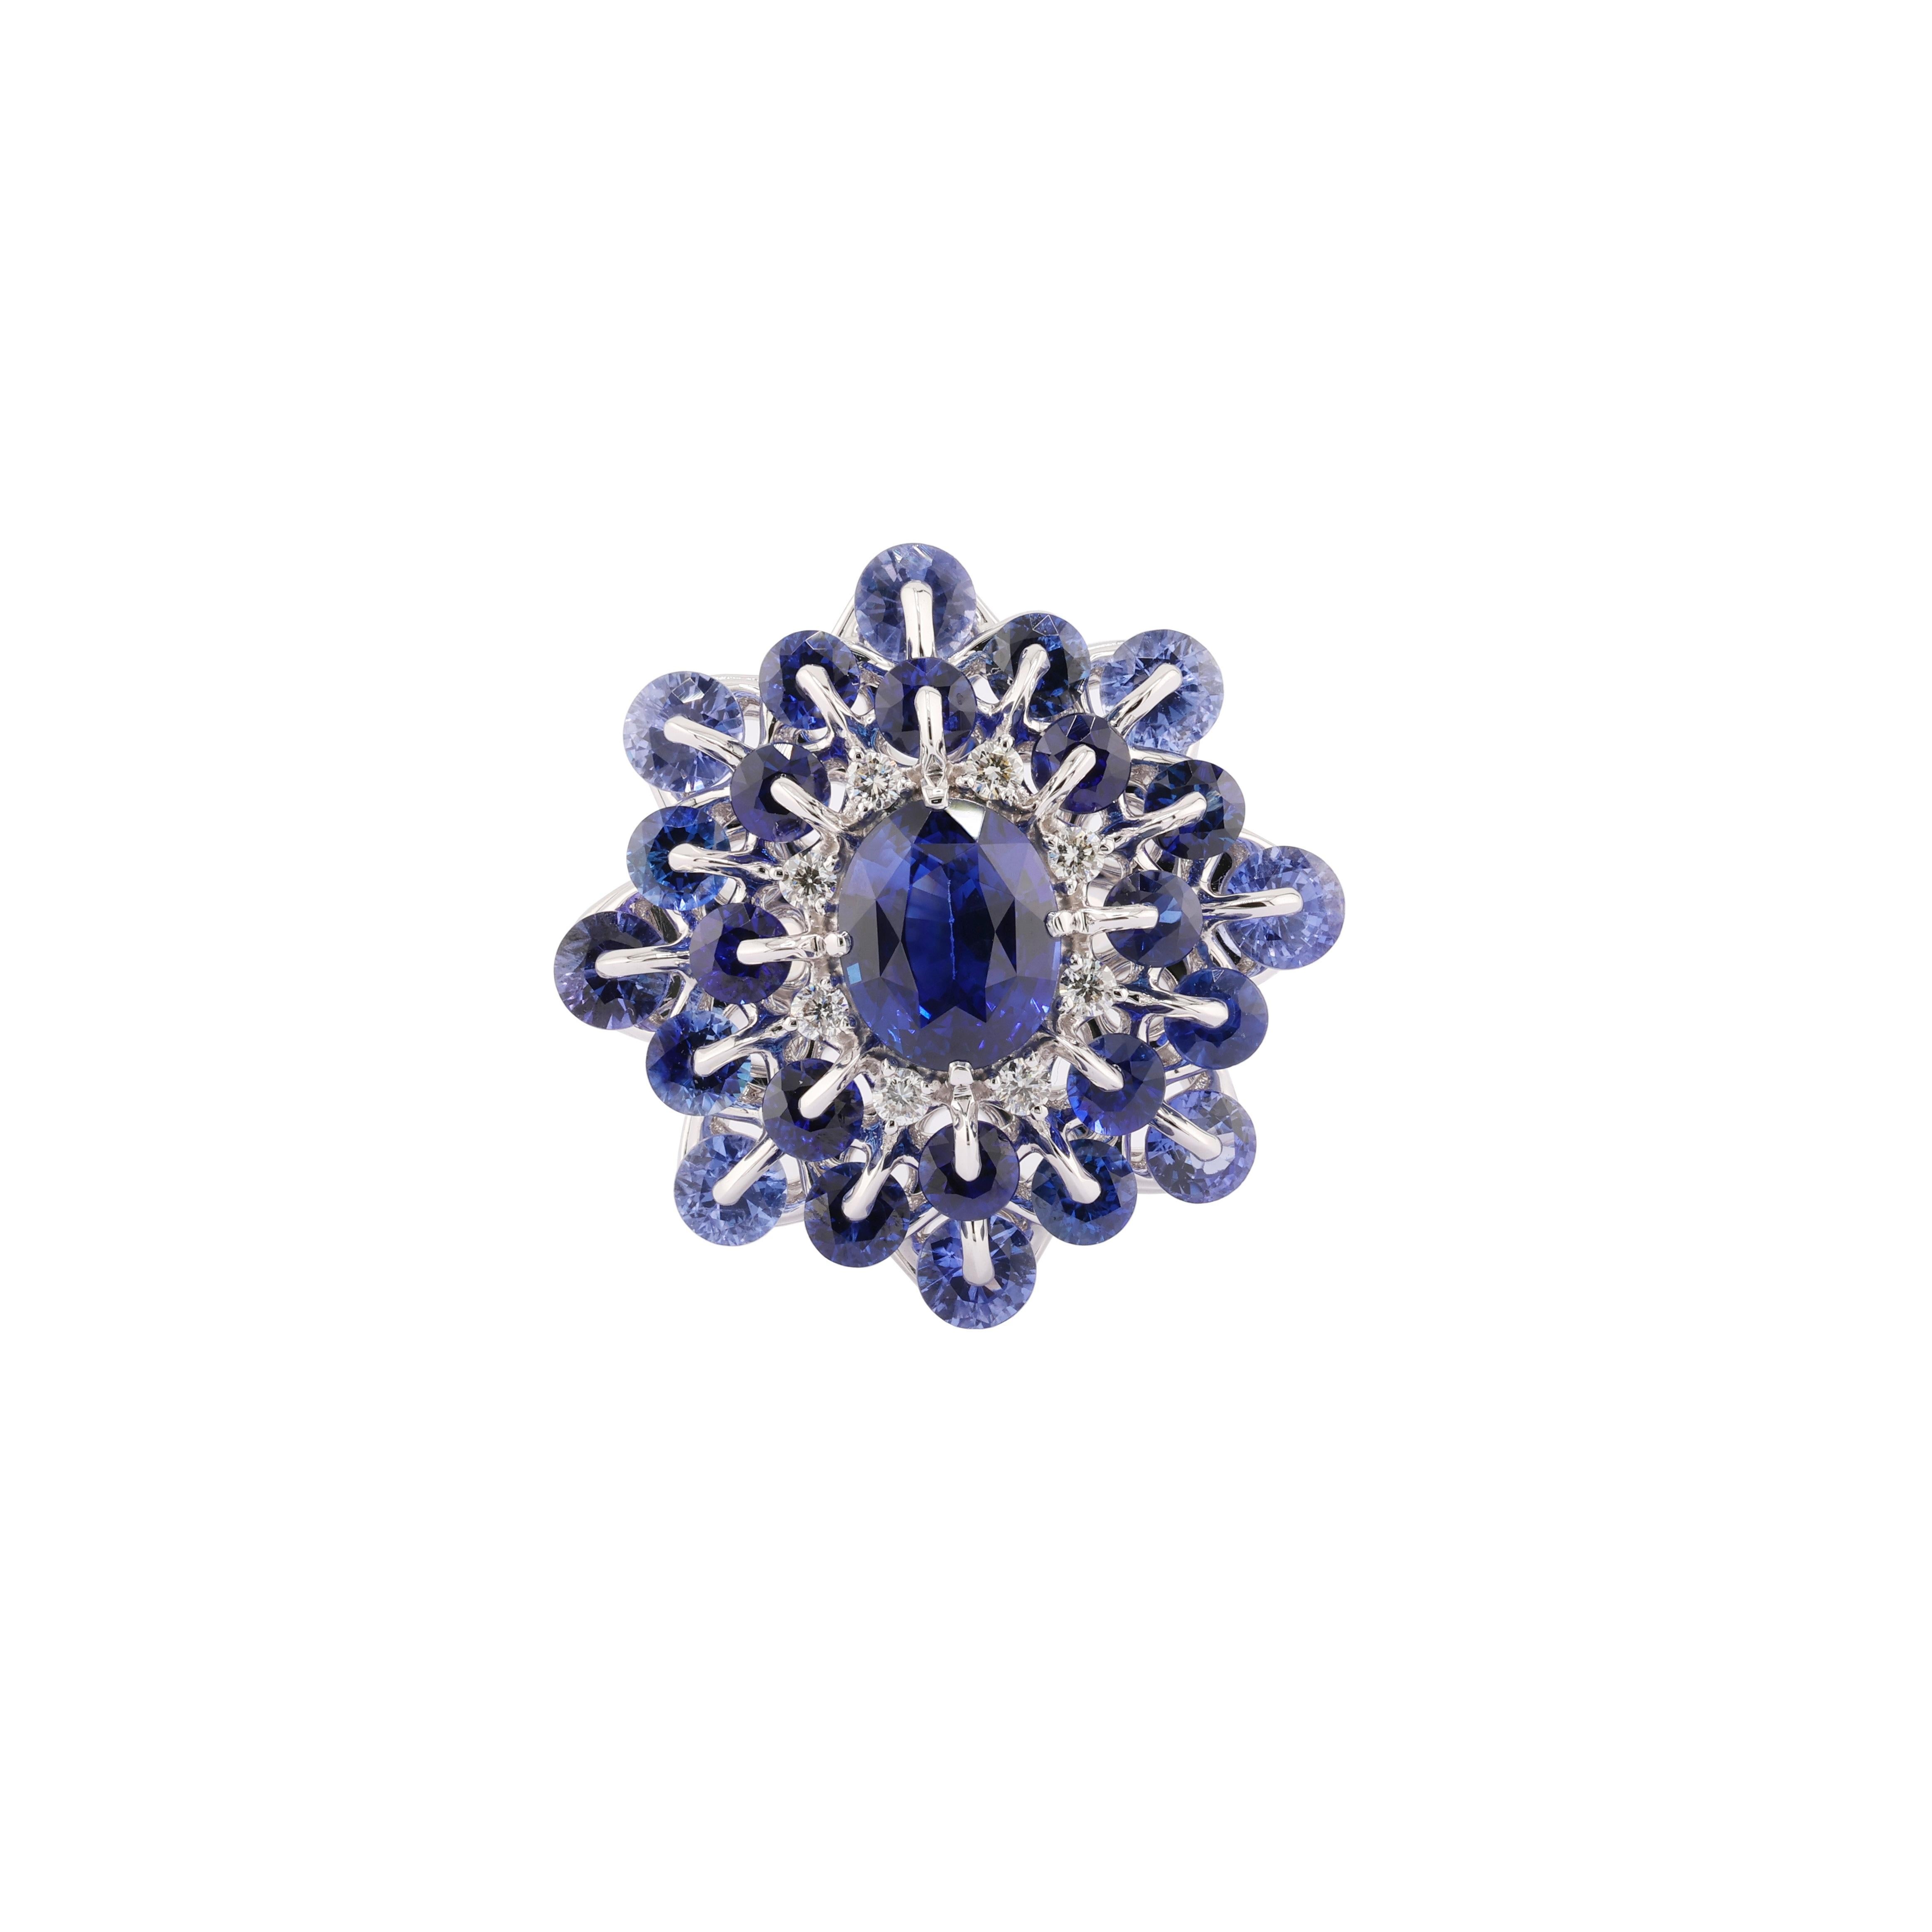 Der faszinierende Saphirring von MOISEIKIN mit einem blauen Saphir von insgesamt 4,89 Karat, verziert mit Diamanten und passenden blauen Saphiren, zieht die Blicke auf sich und strahlt Eleganz und Raffinesse aus.
Inspiriert von dem prächtigen